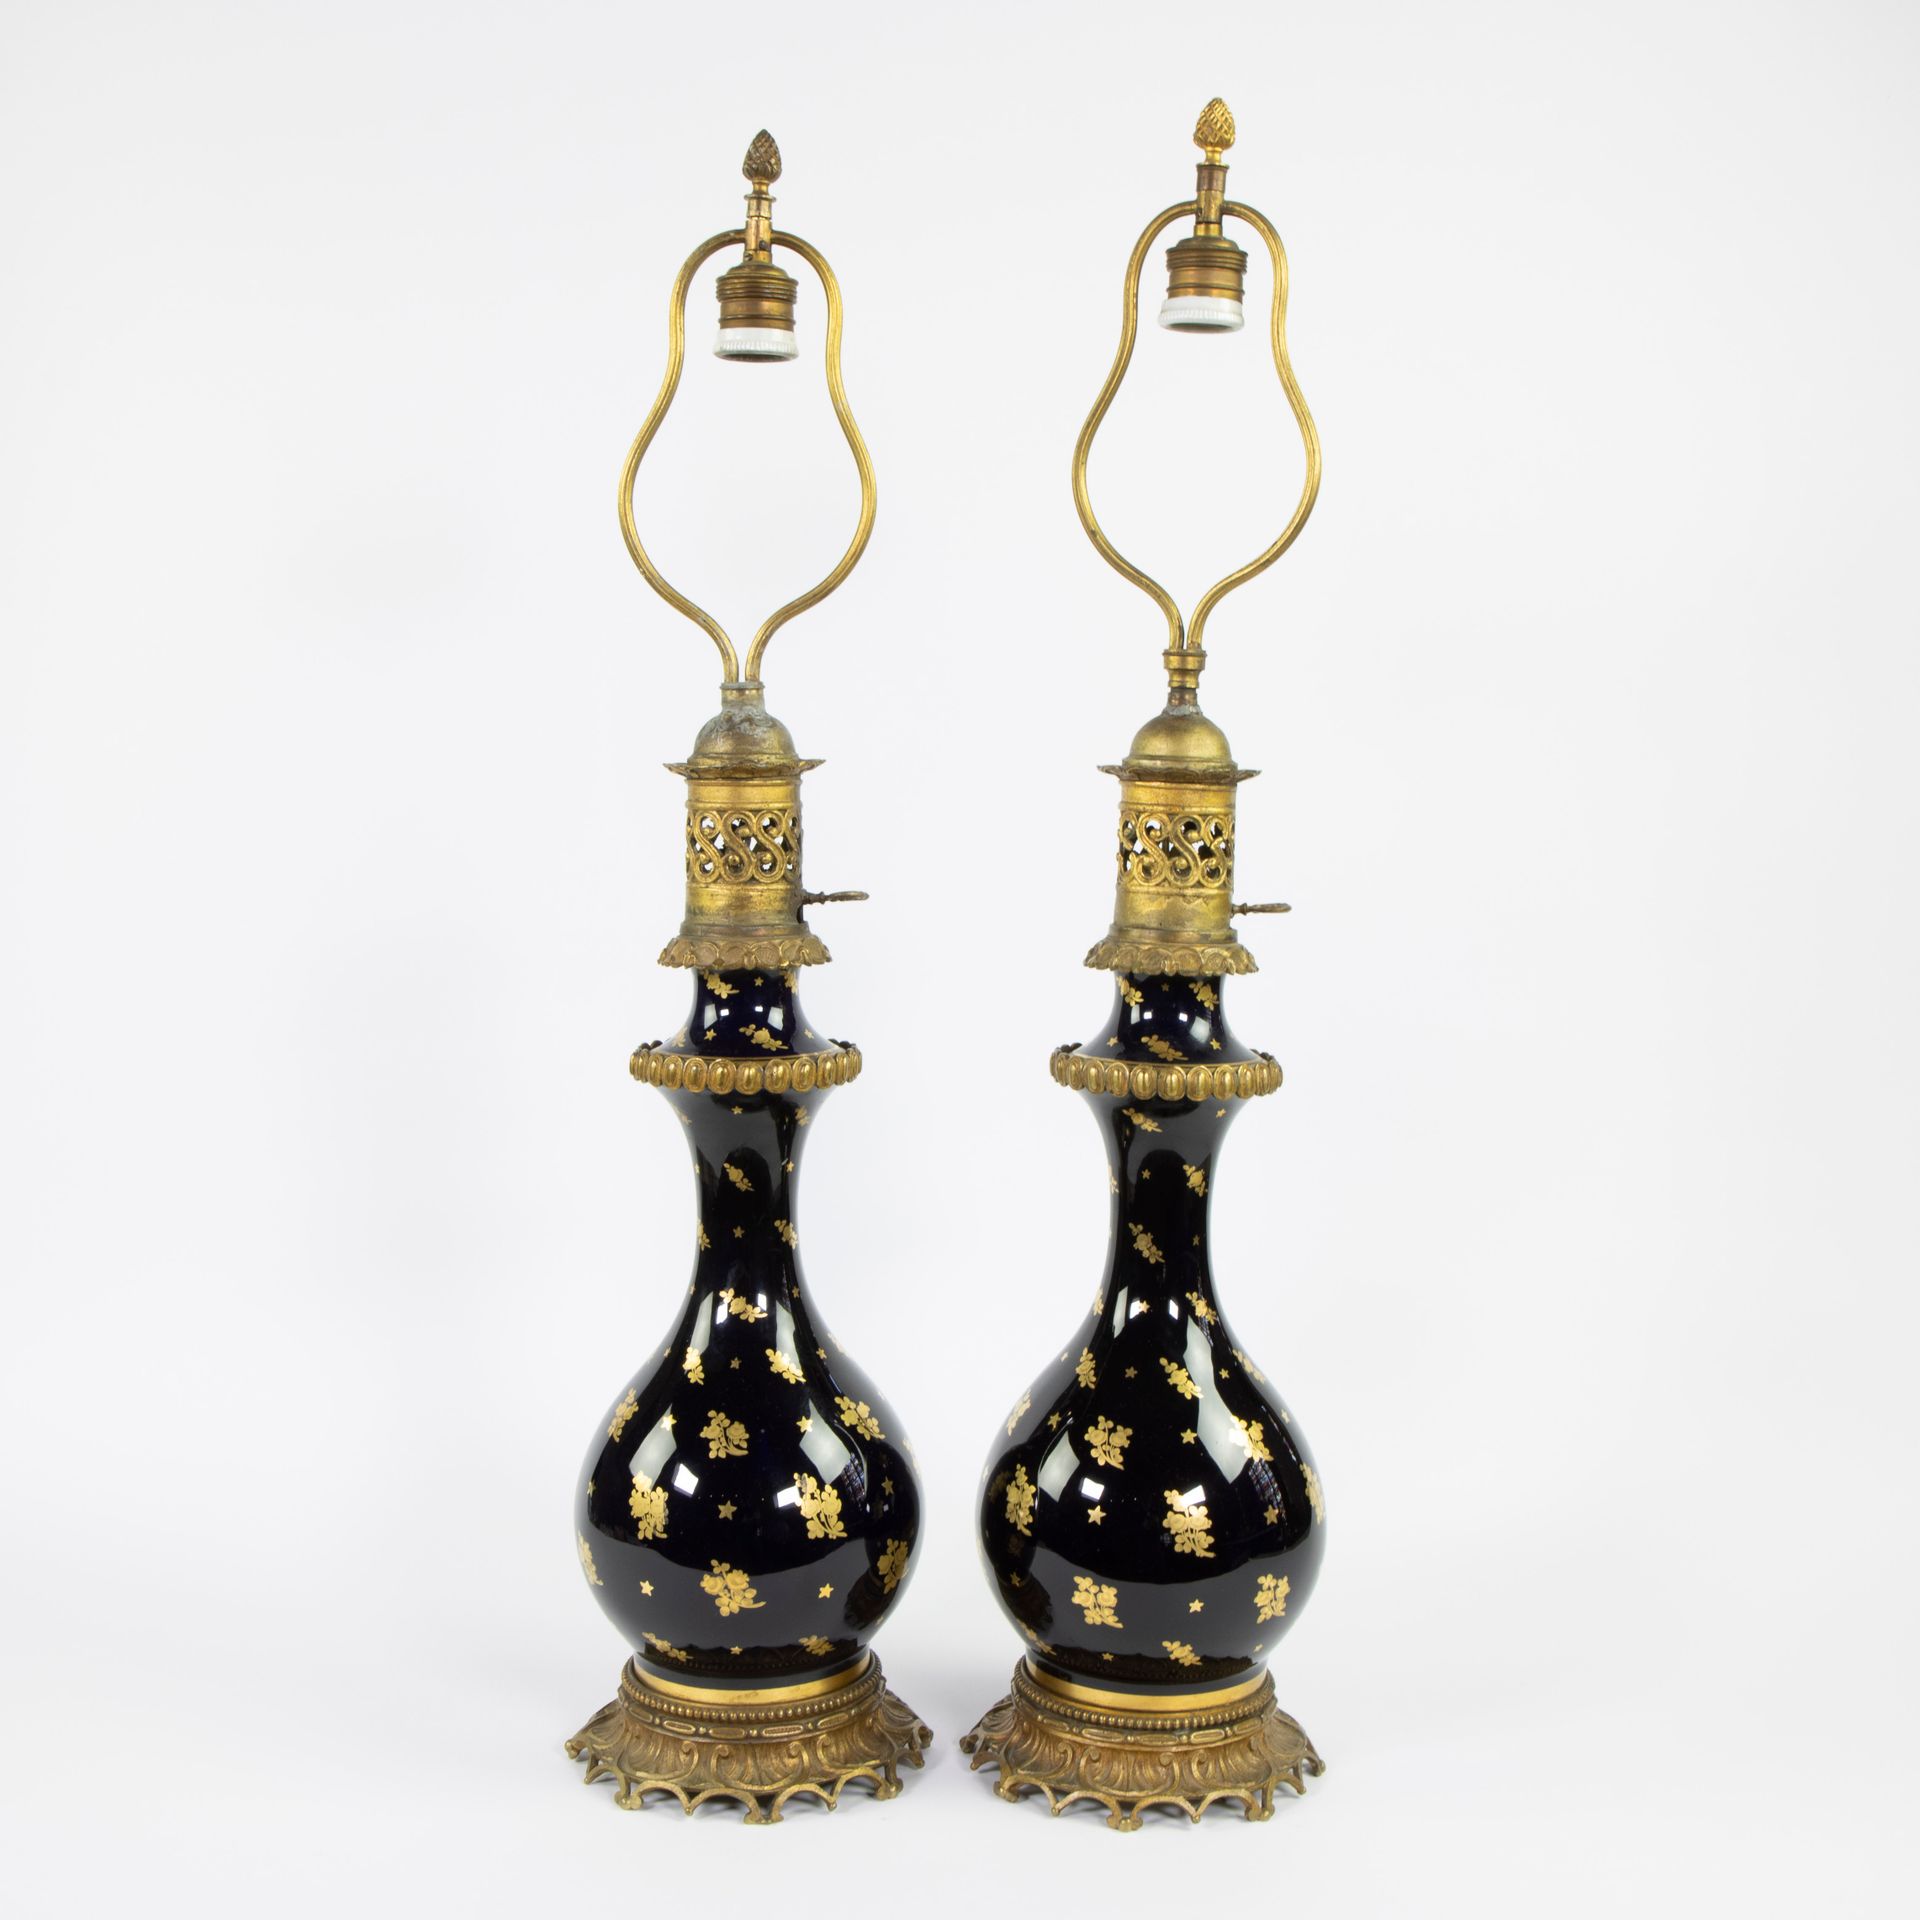 Null Paar Öllampen kobaltblau mit Messingrahmen, Sèvres Stil
Paar Öllampen kobal&hellip;